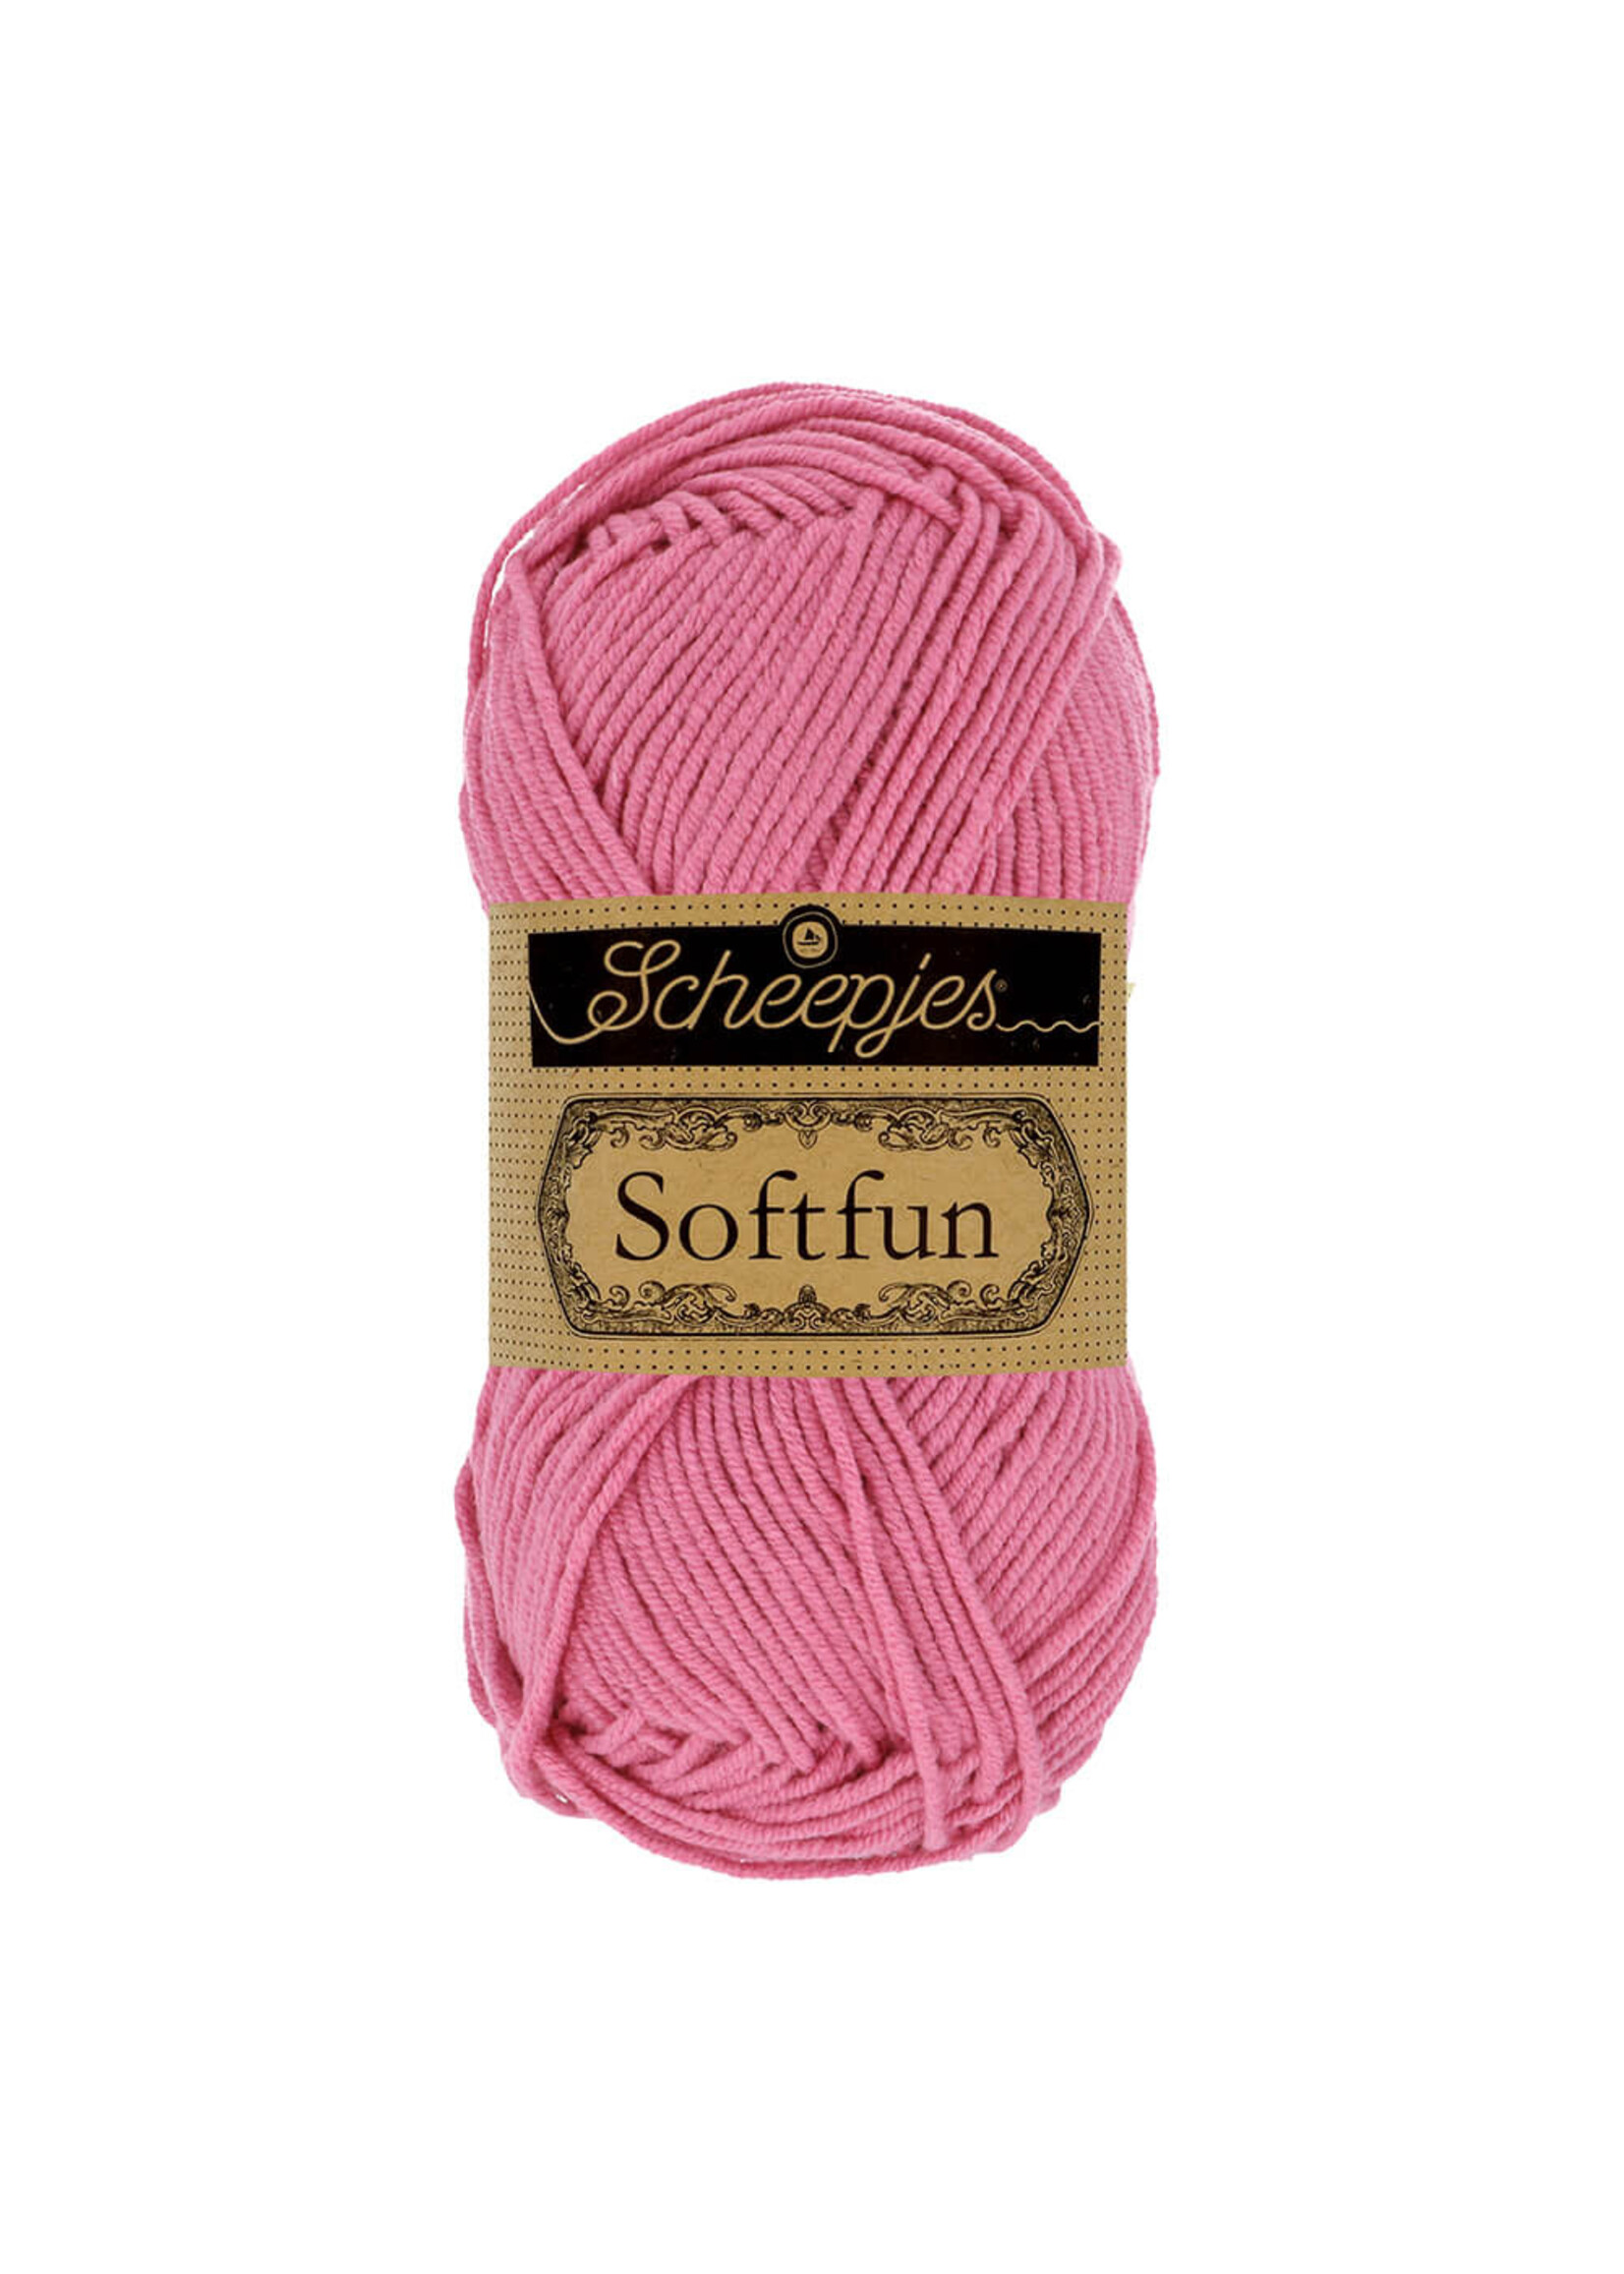 Scheepjes Softfun 50g - 2480 Pink